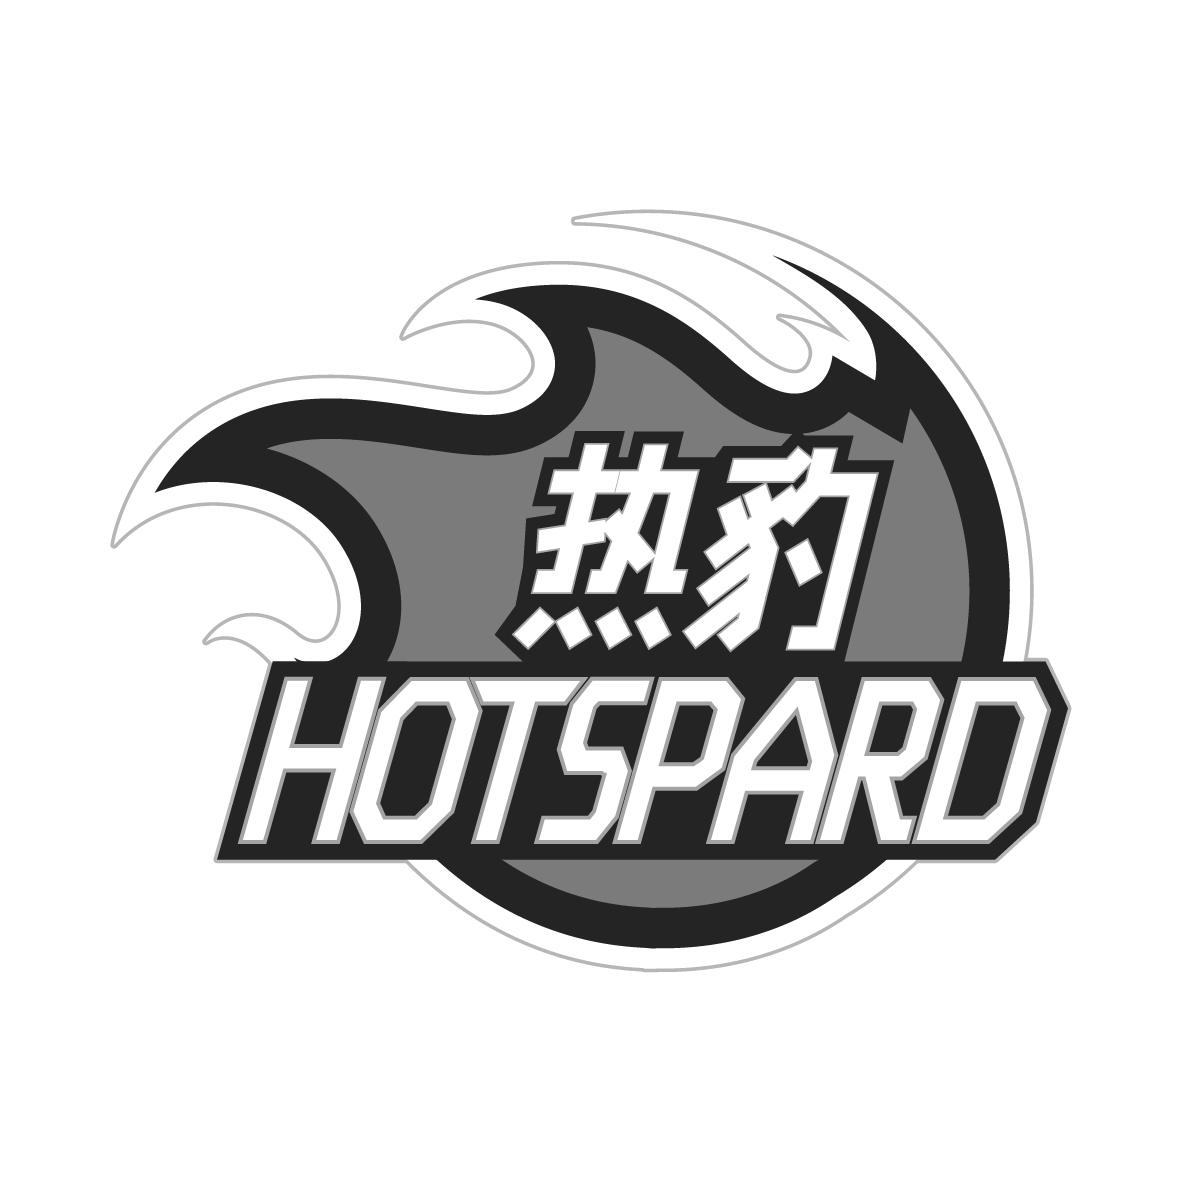 42类-网站服务热豹 HOTSPARD商标转让